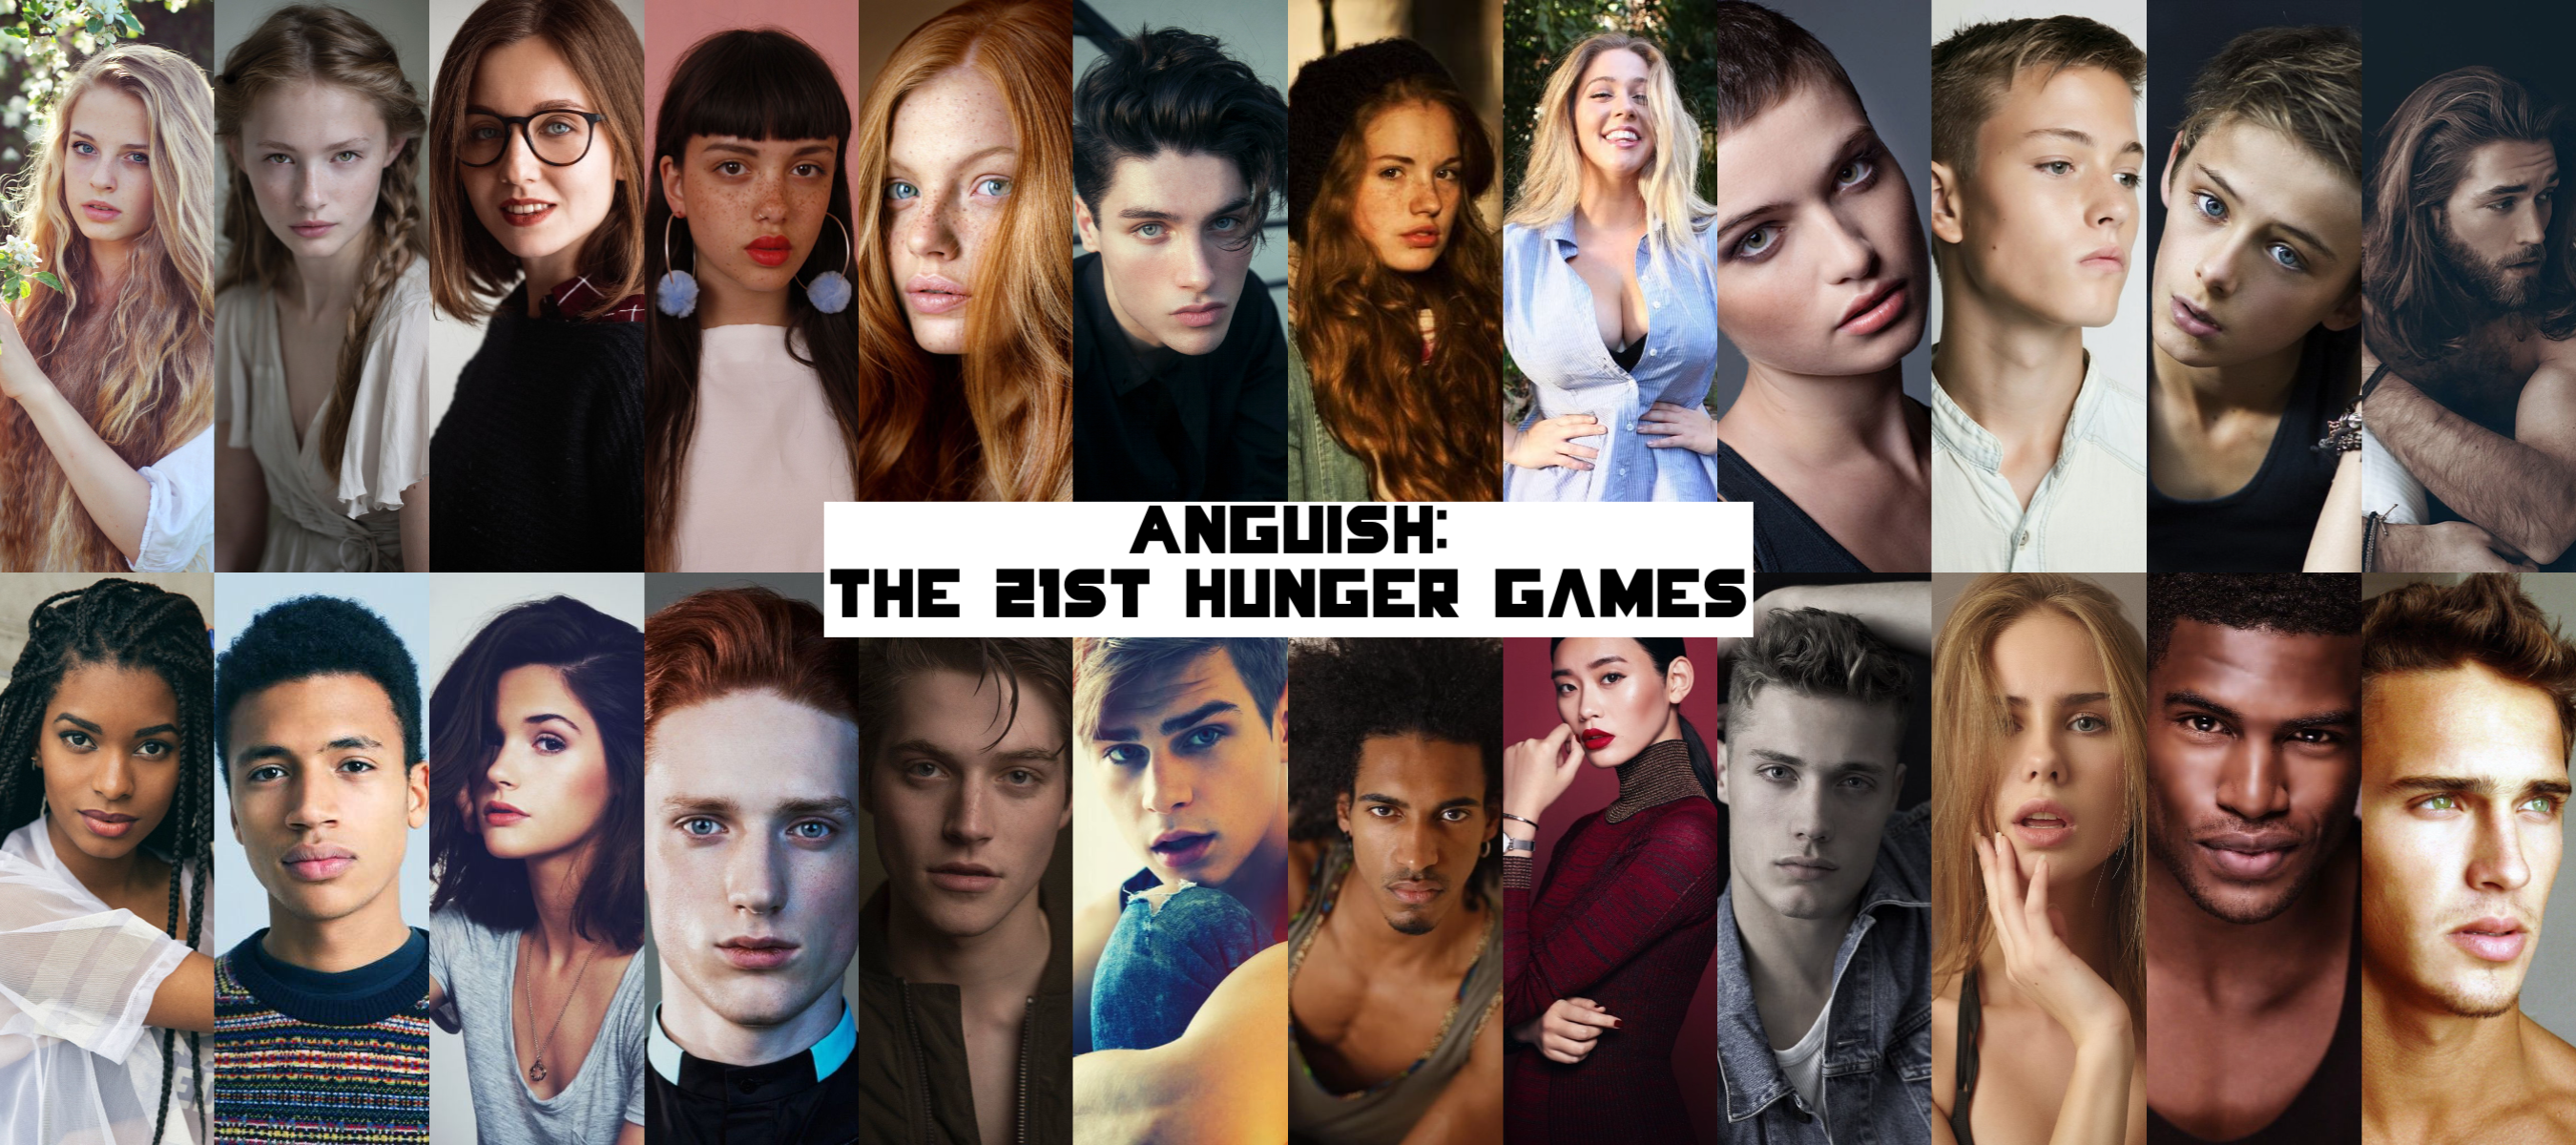 User blog:FrostyFire/The 21st Hunger Games